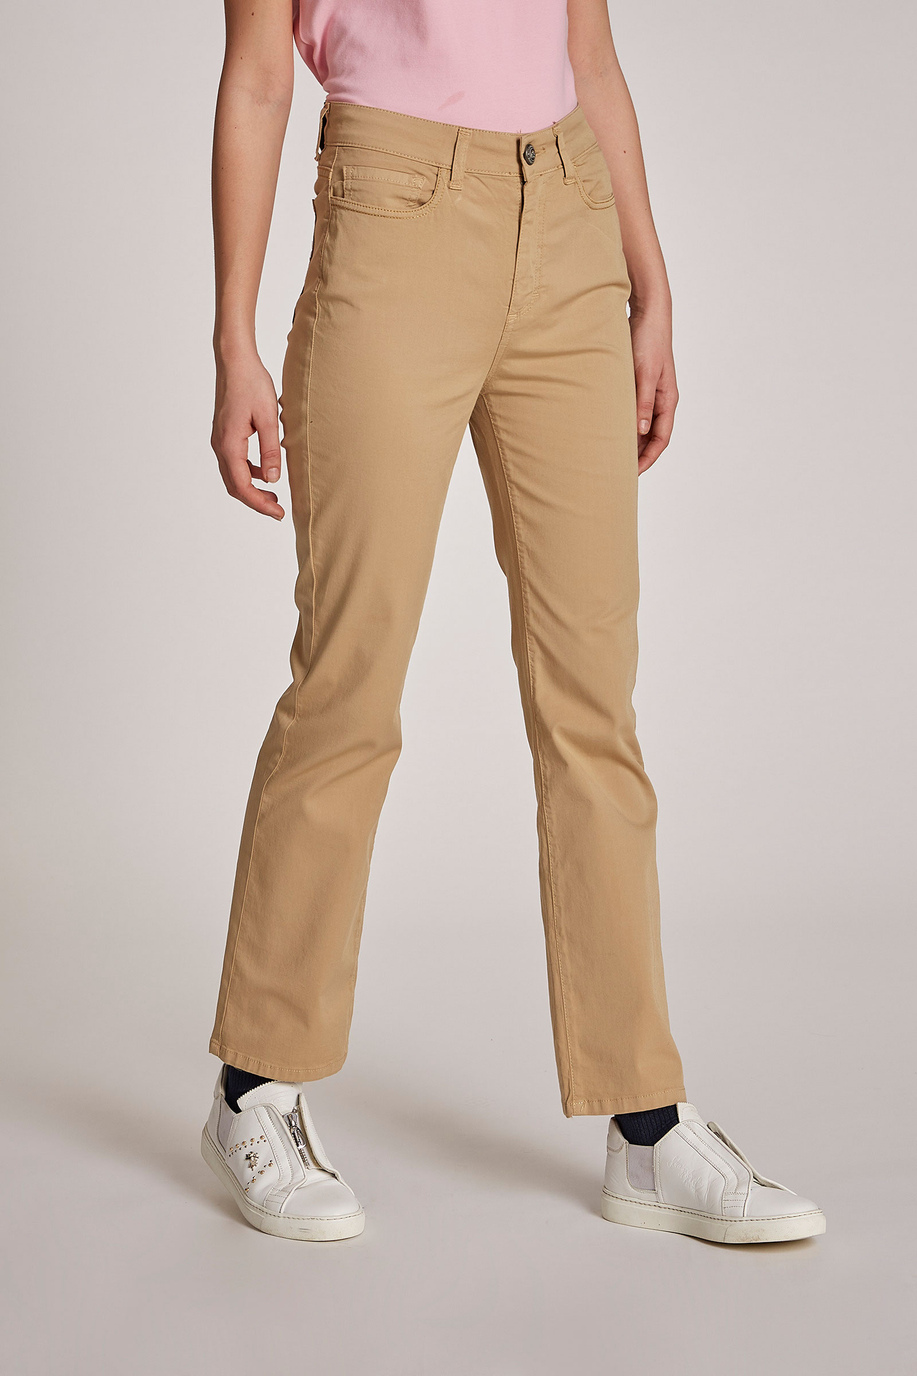 Pantalón de mujer con cinco bolsillos de algodón elástico, corte regular | La Martina - Official Online Shop